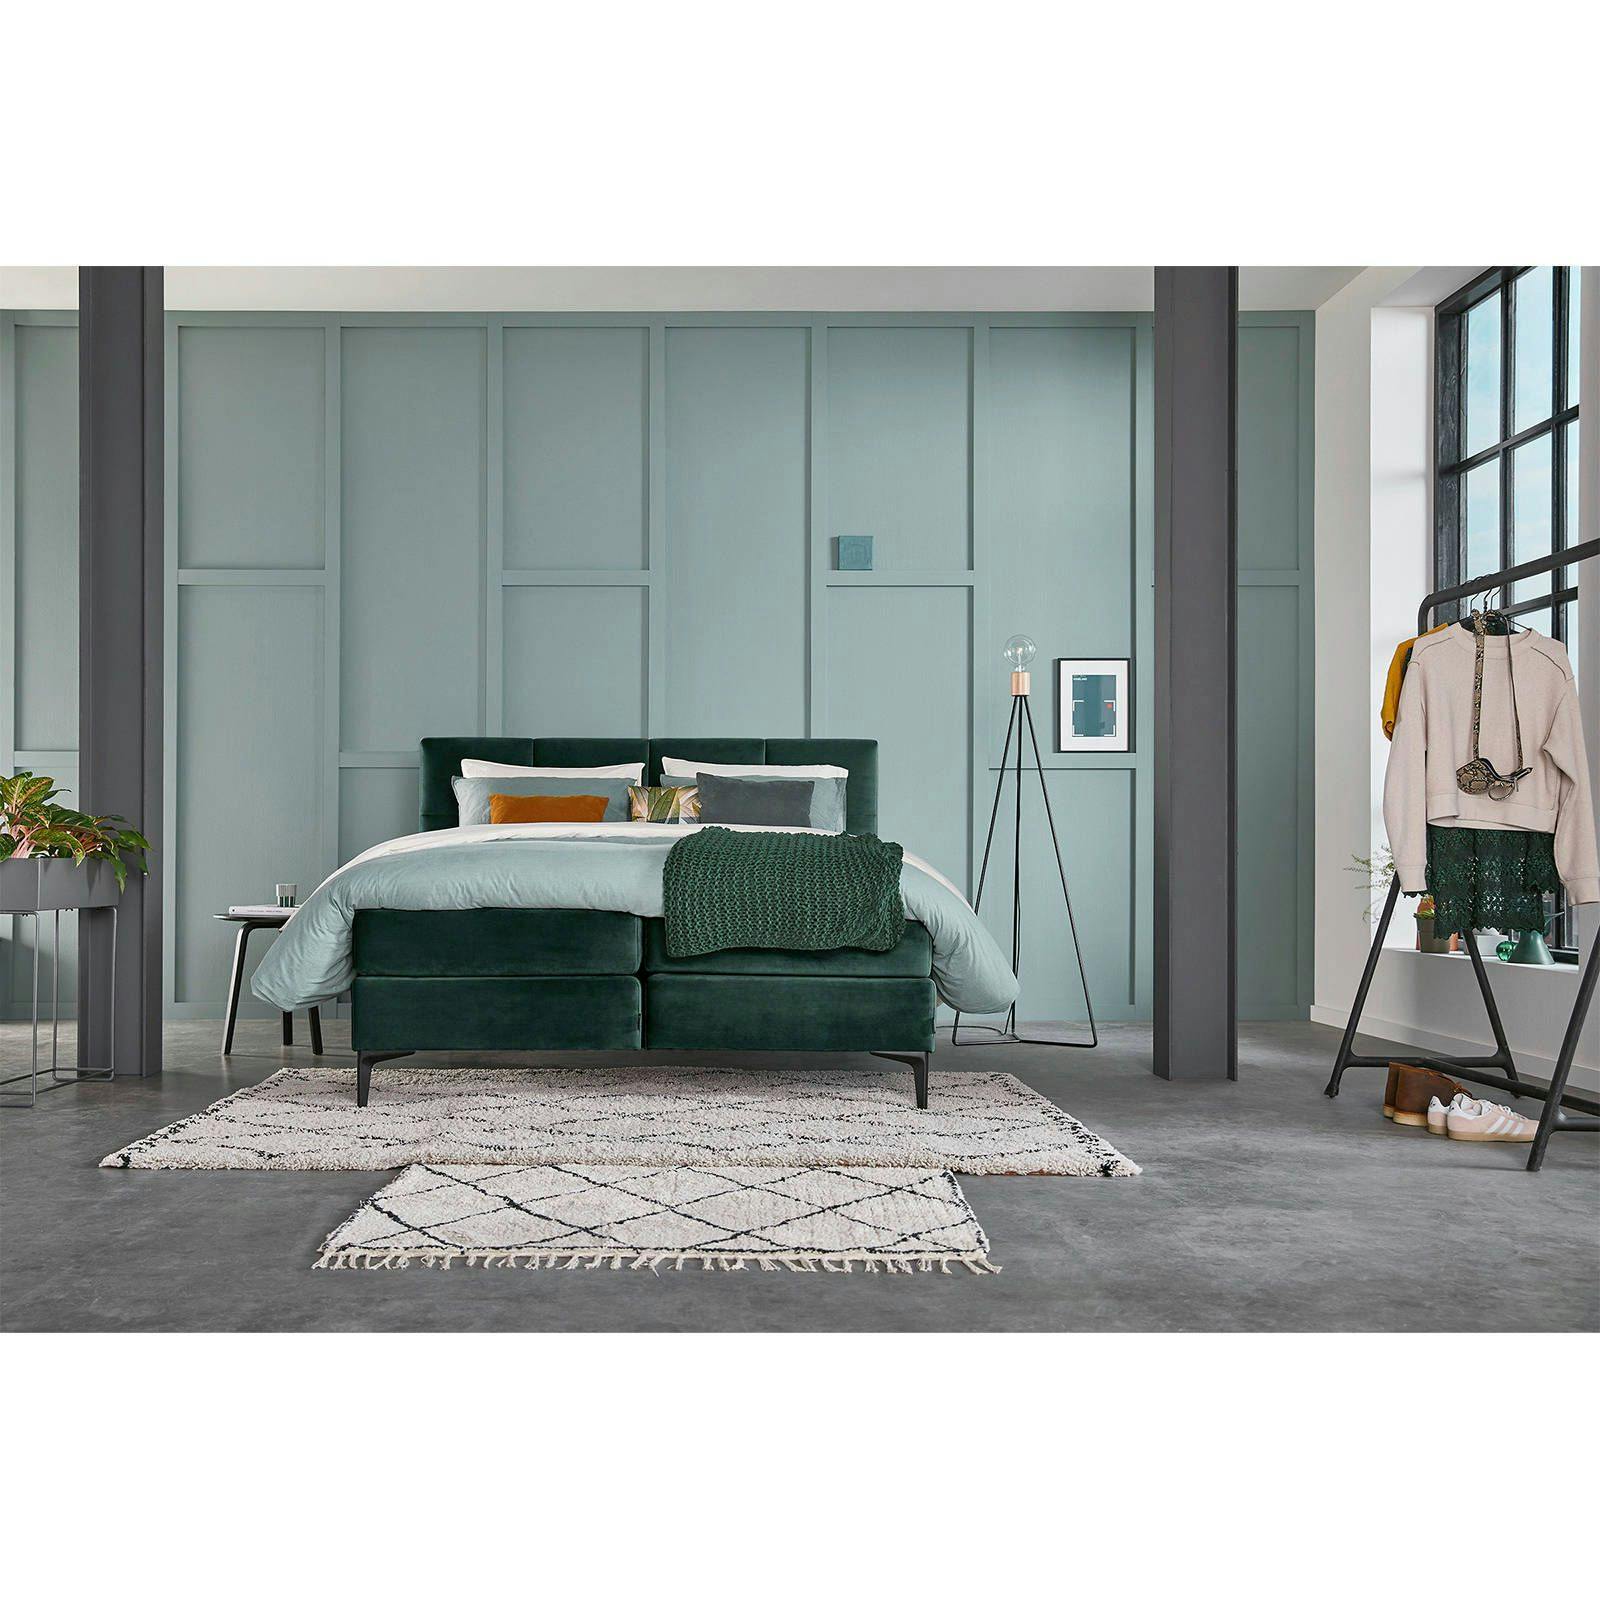 slaapkamer-meubels-groen